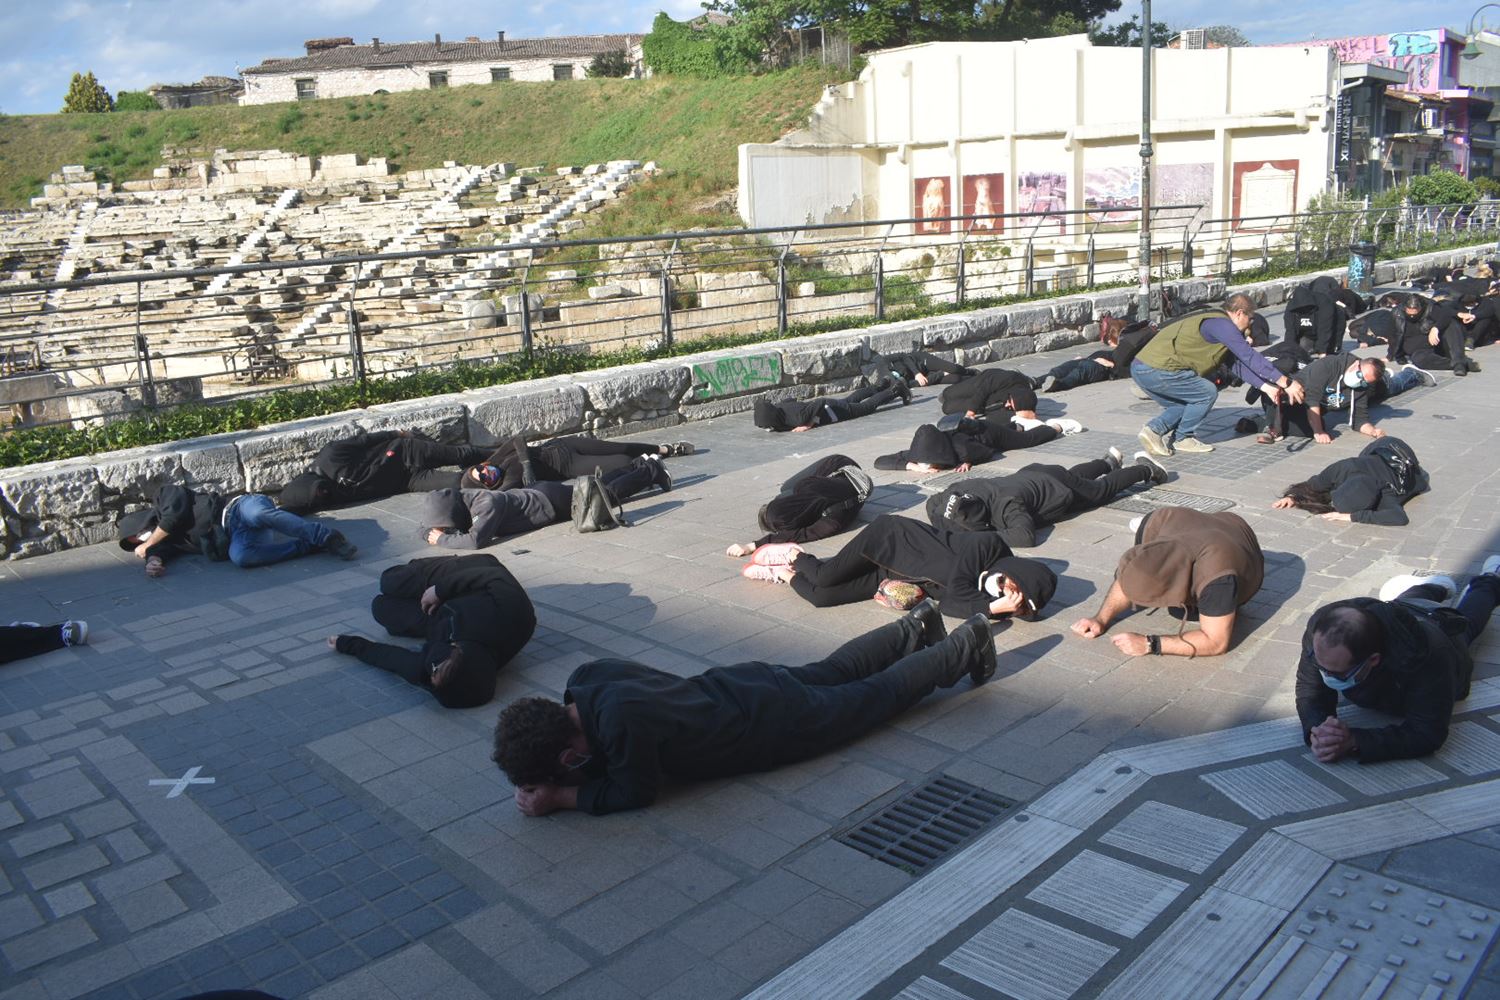 Ένωσαν τις φωνές τους για τον Πολιτισμό στη Λάρισα - Συμβολική διαμαρτυρία καλλιτεχνών μπροστά από το Αρχαίο Θέατρο (φωτο - βίντεο)